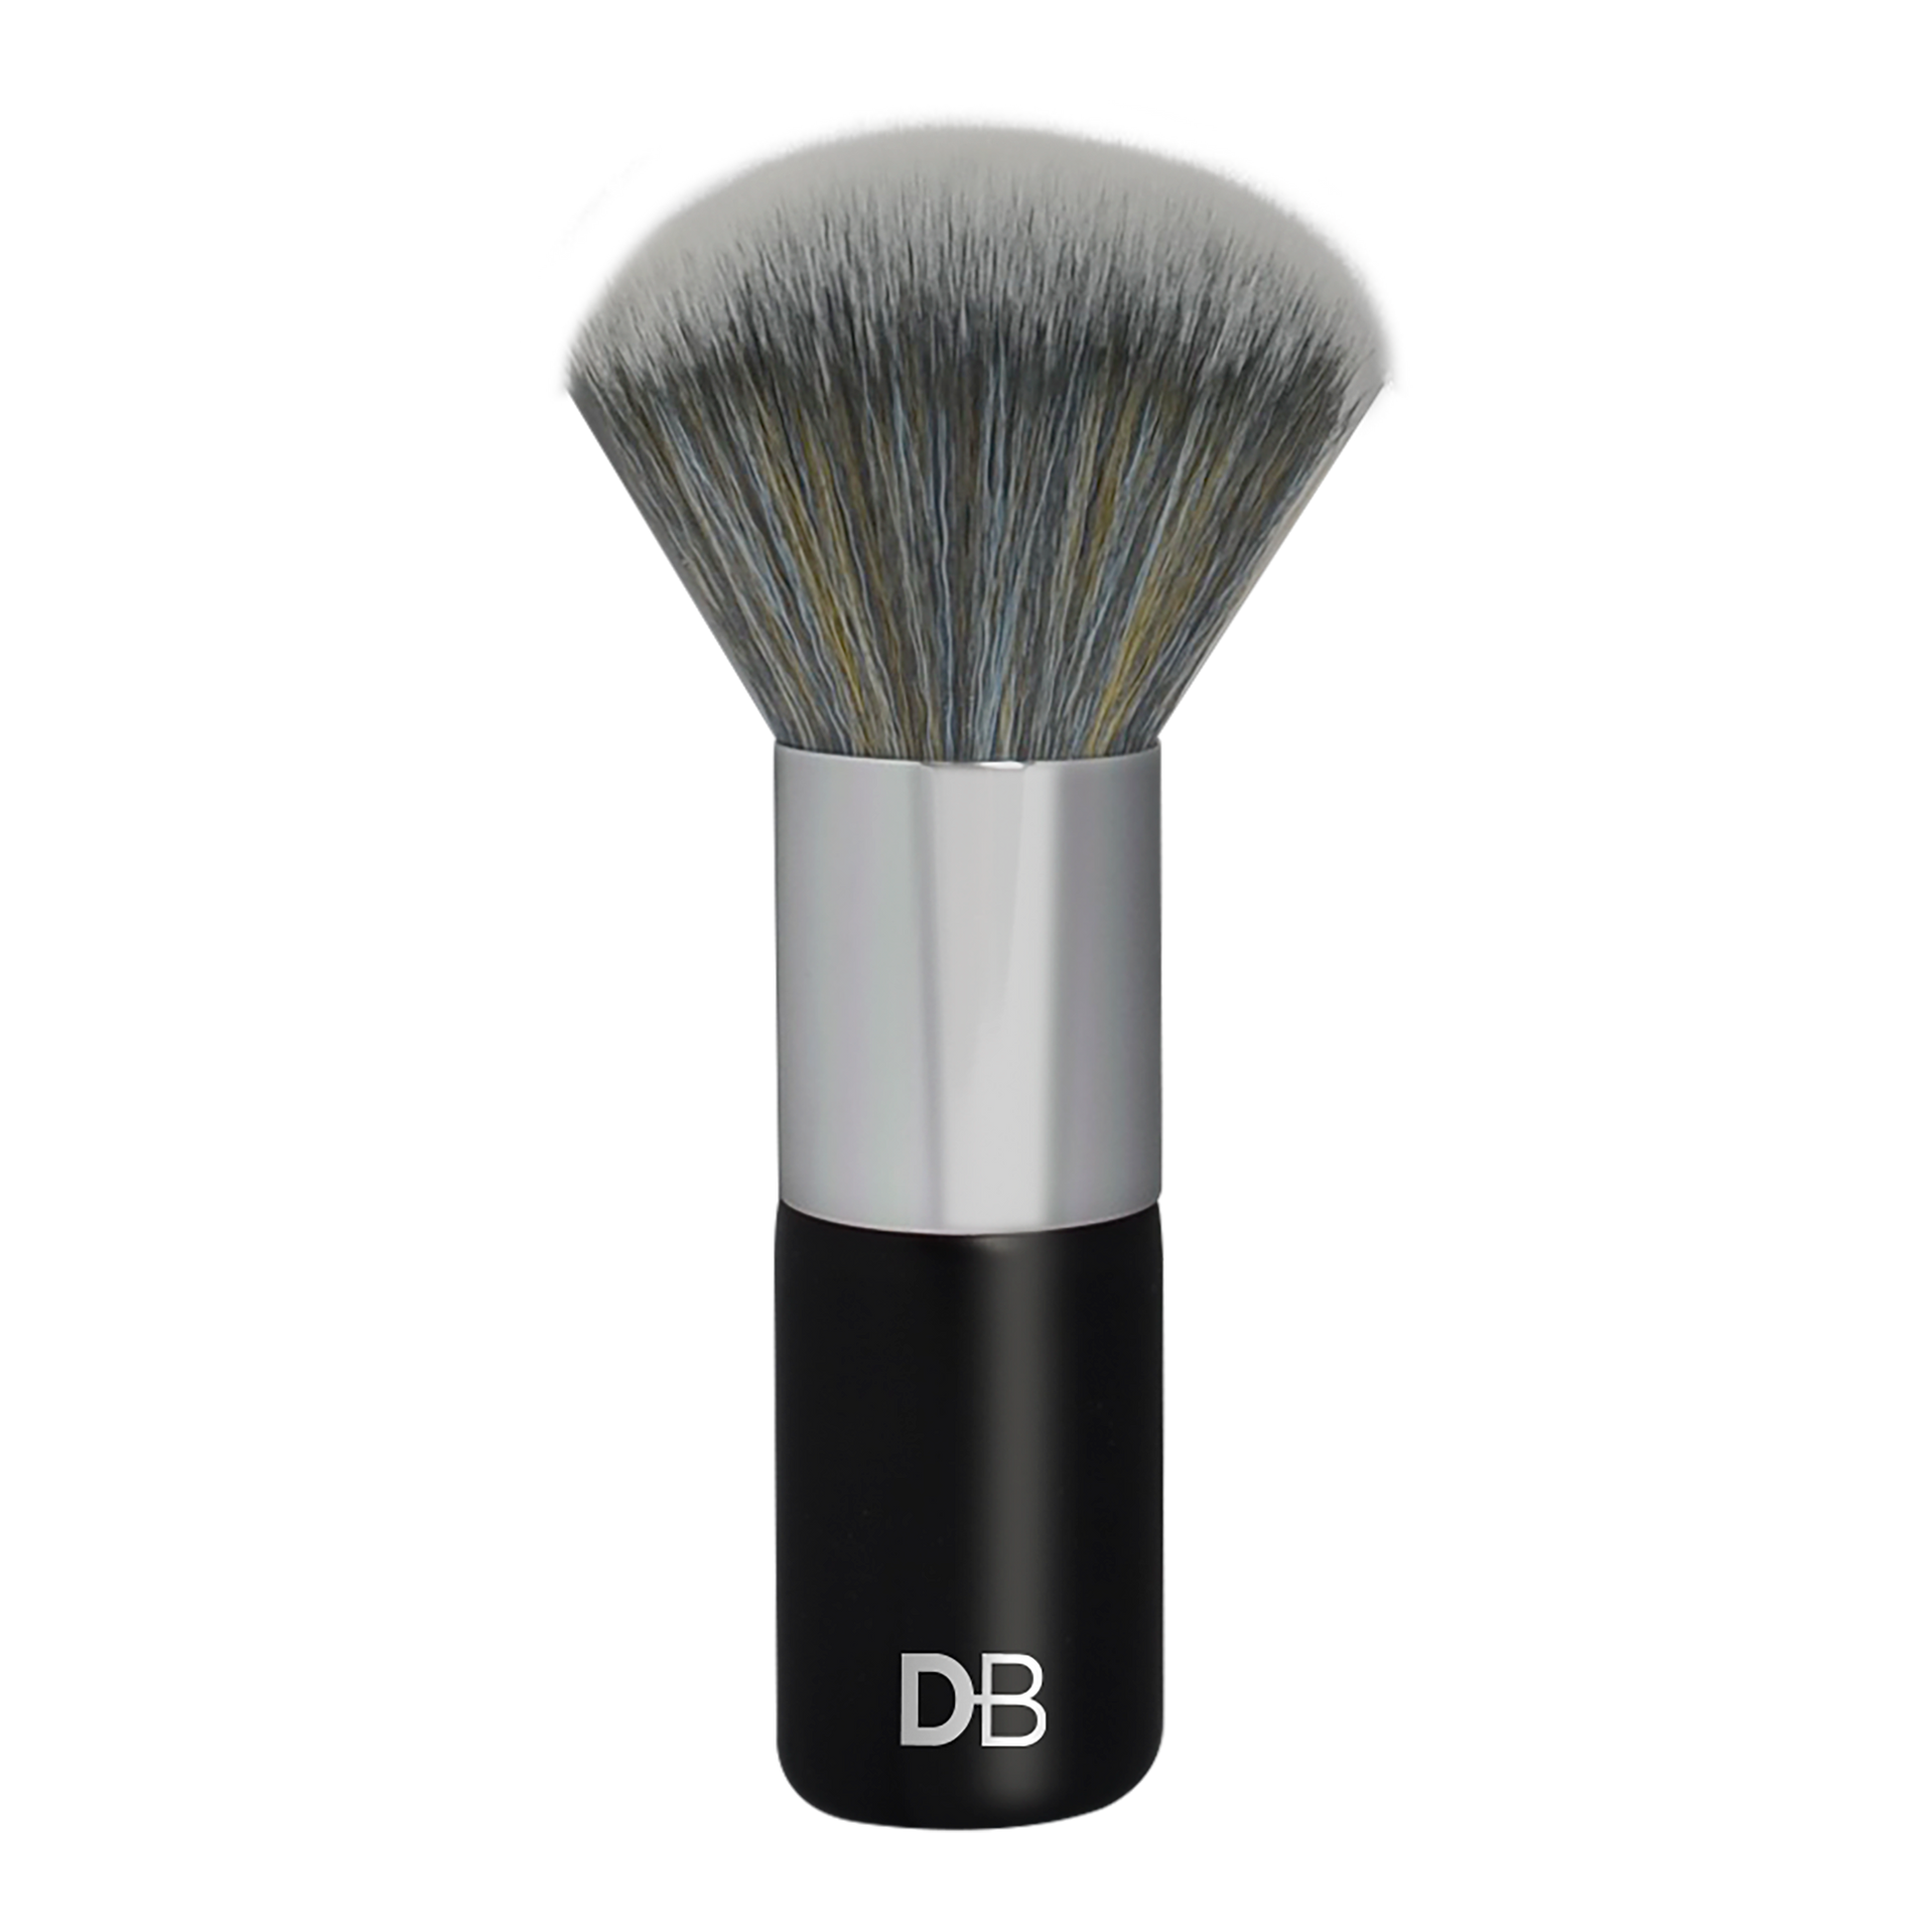 Complexion Perfection Kabuki Makeup Brush | DB Cosmetics